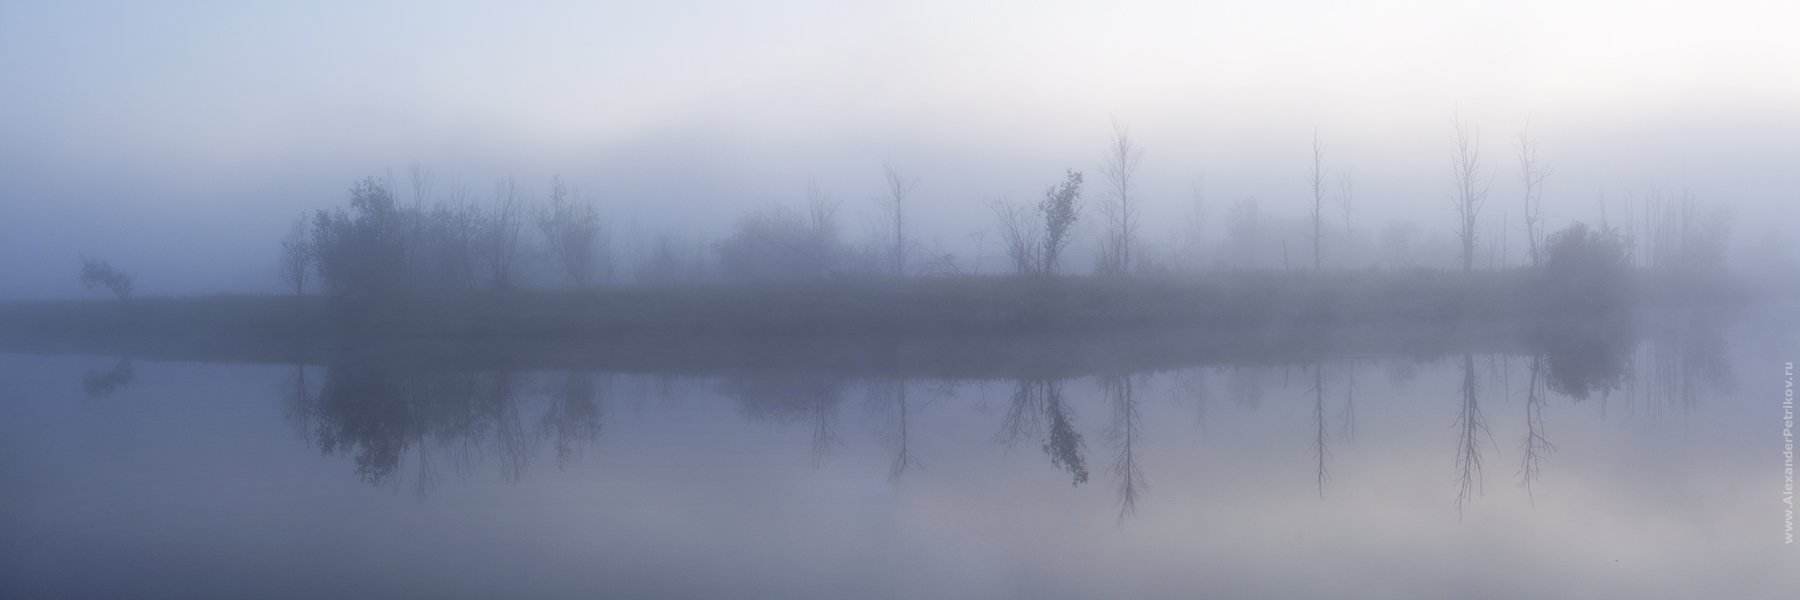 туман, река, деревья, утро, рассвет, Александр Петриков